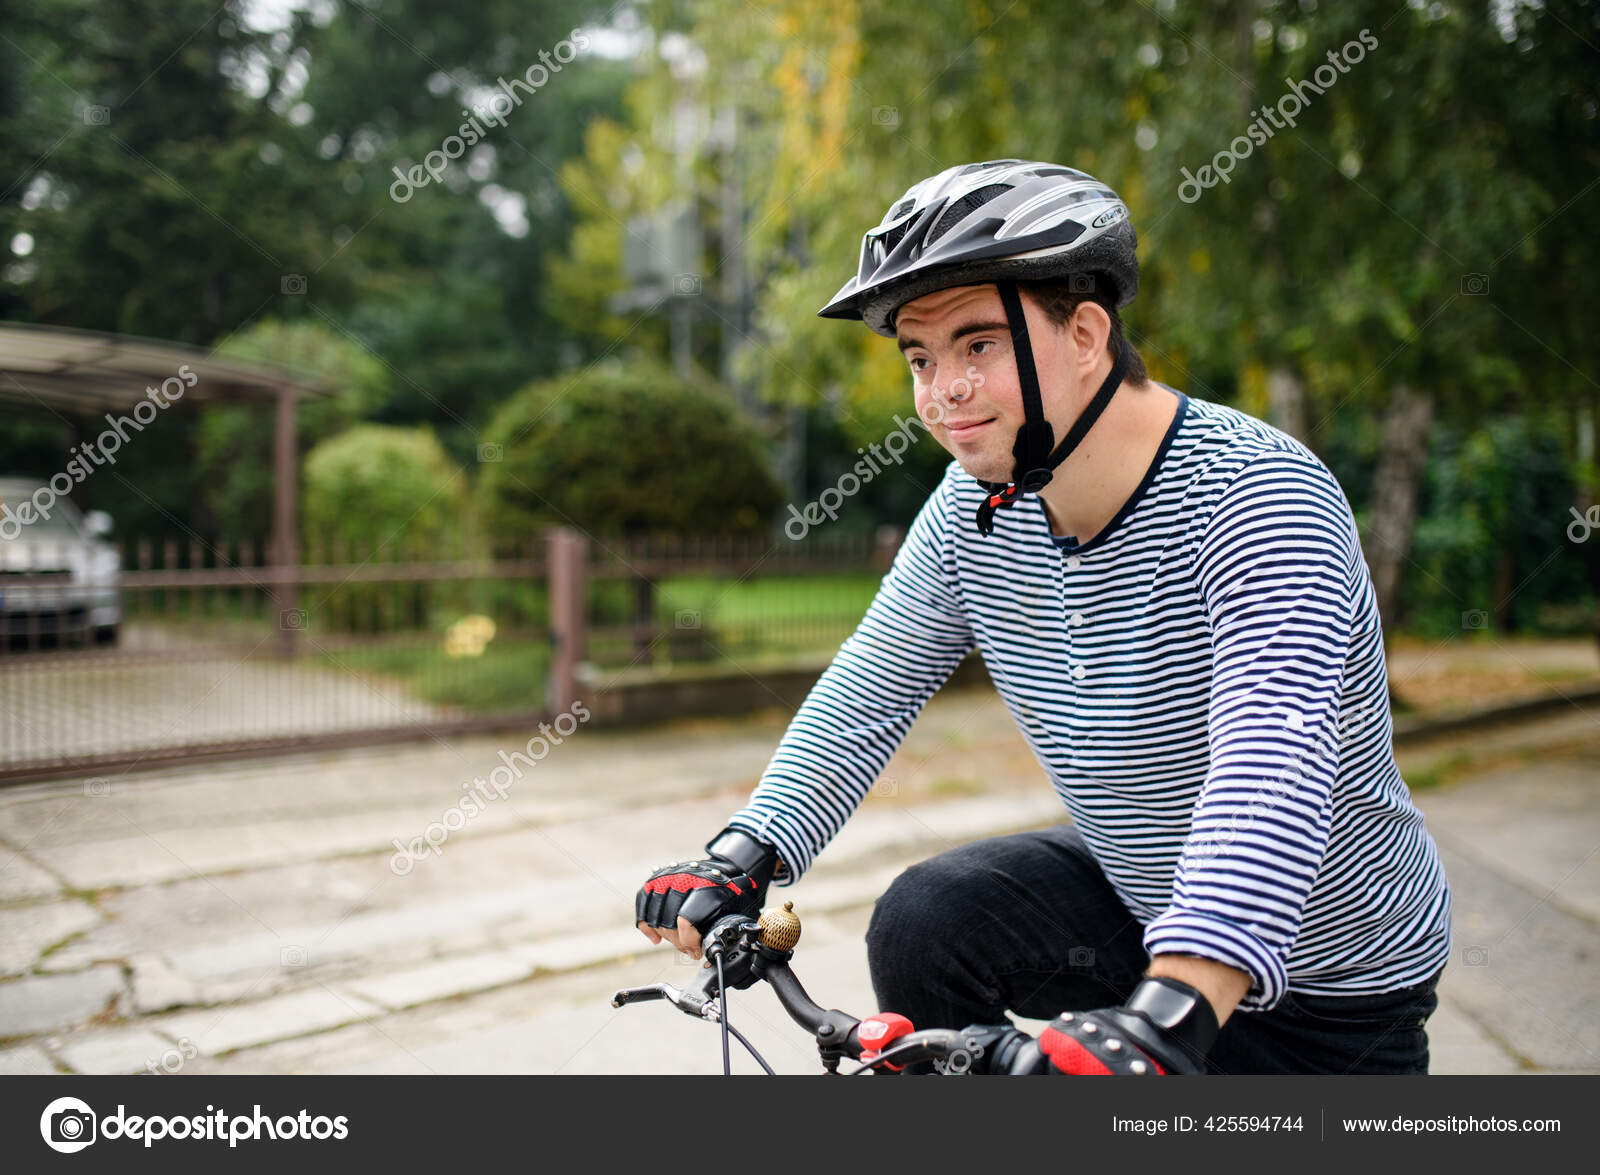 Retrato del síndrome de Down hombre adulto con bicicleta al aire libre en  la calle.: fotografía de stock © halfpoint #425594744